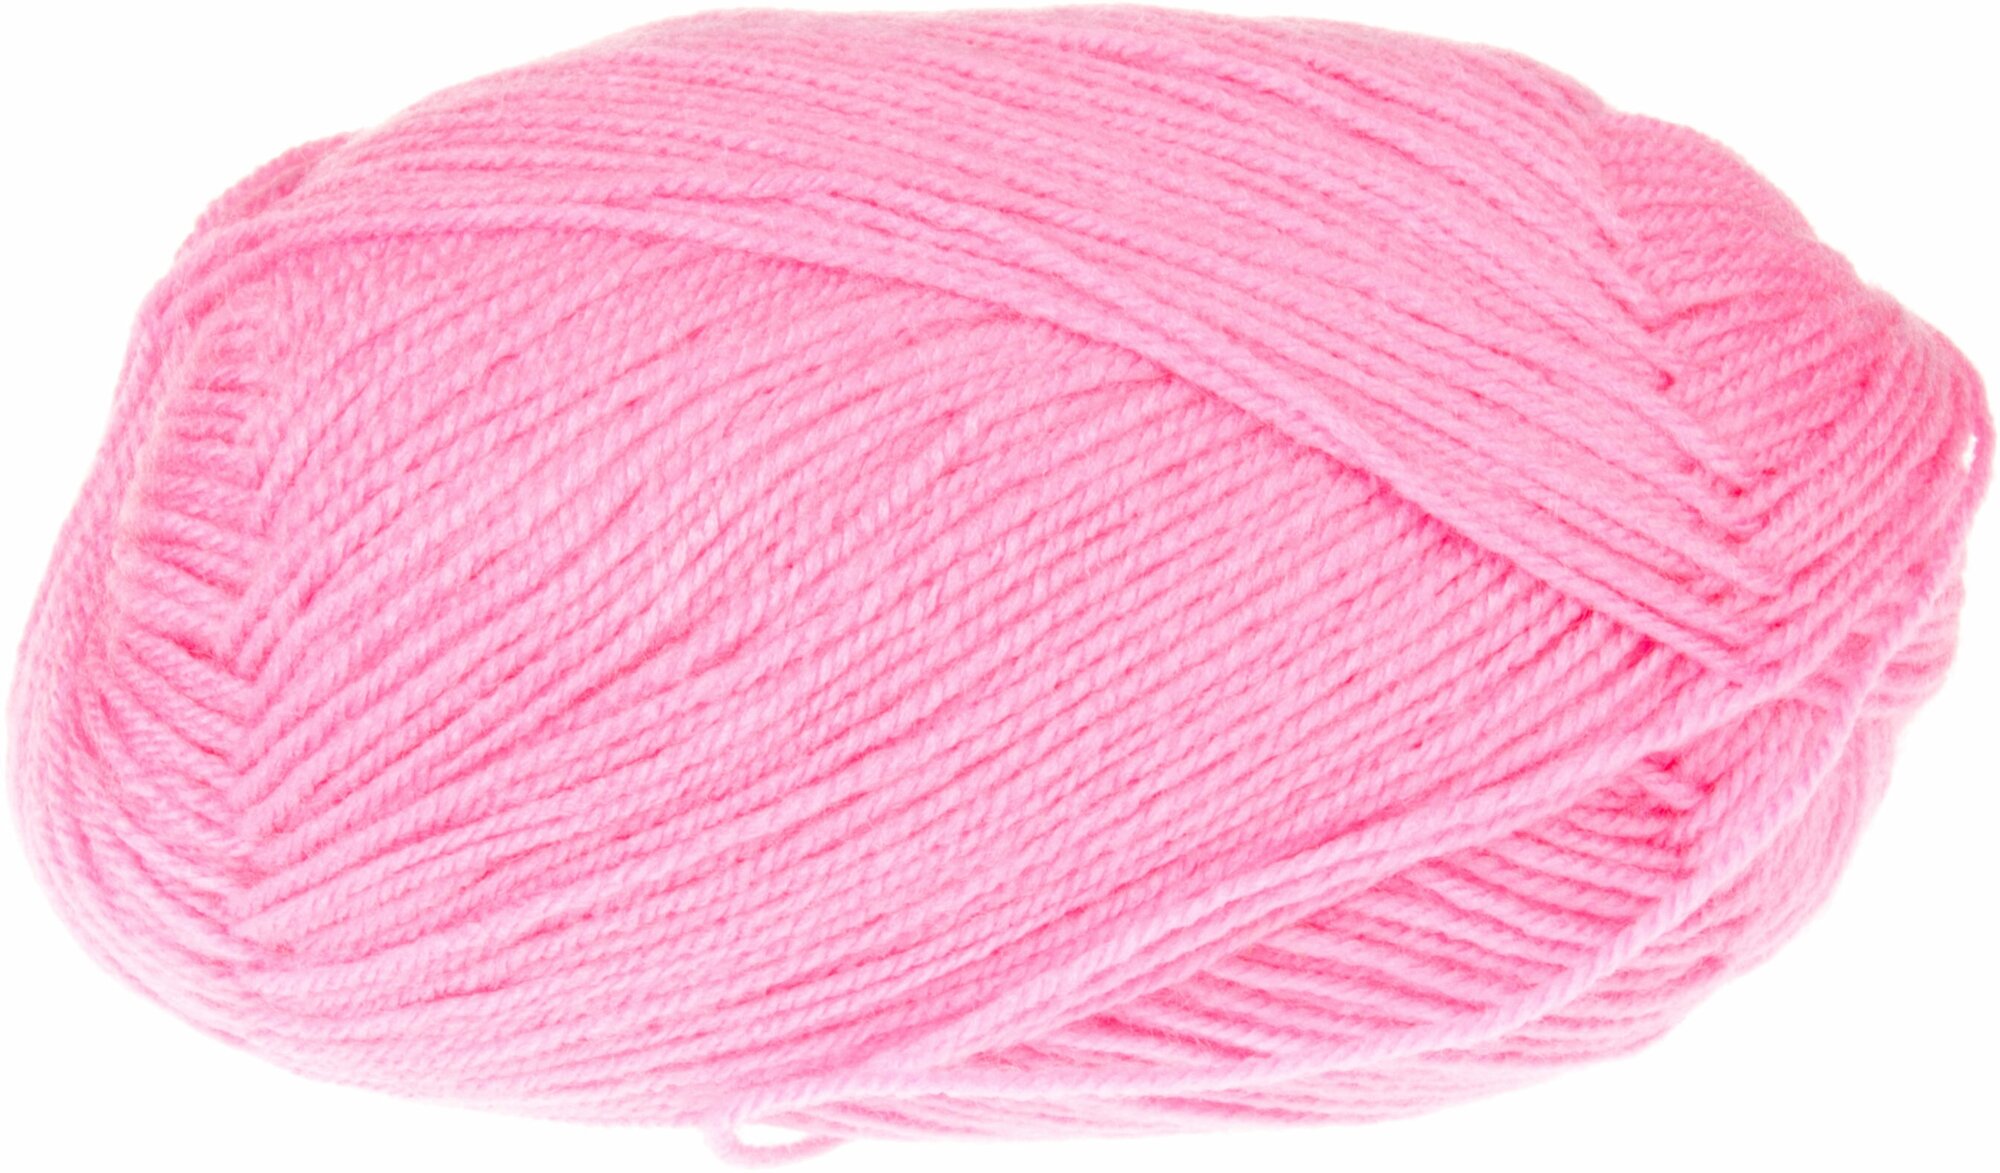 Пряжа Пехорка Детская новинка ярко-розовый (11), 100%высокообъемный акрил, 200м, 50г, 5шт